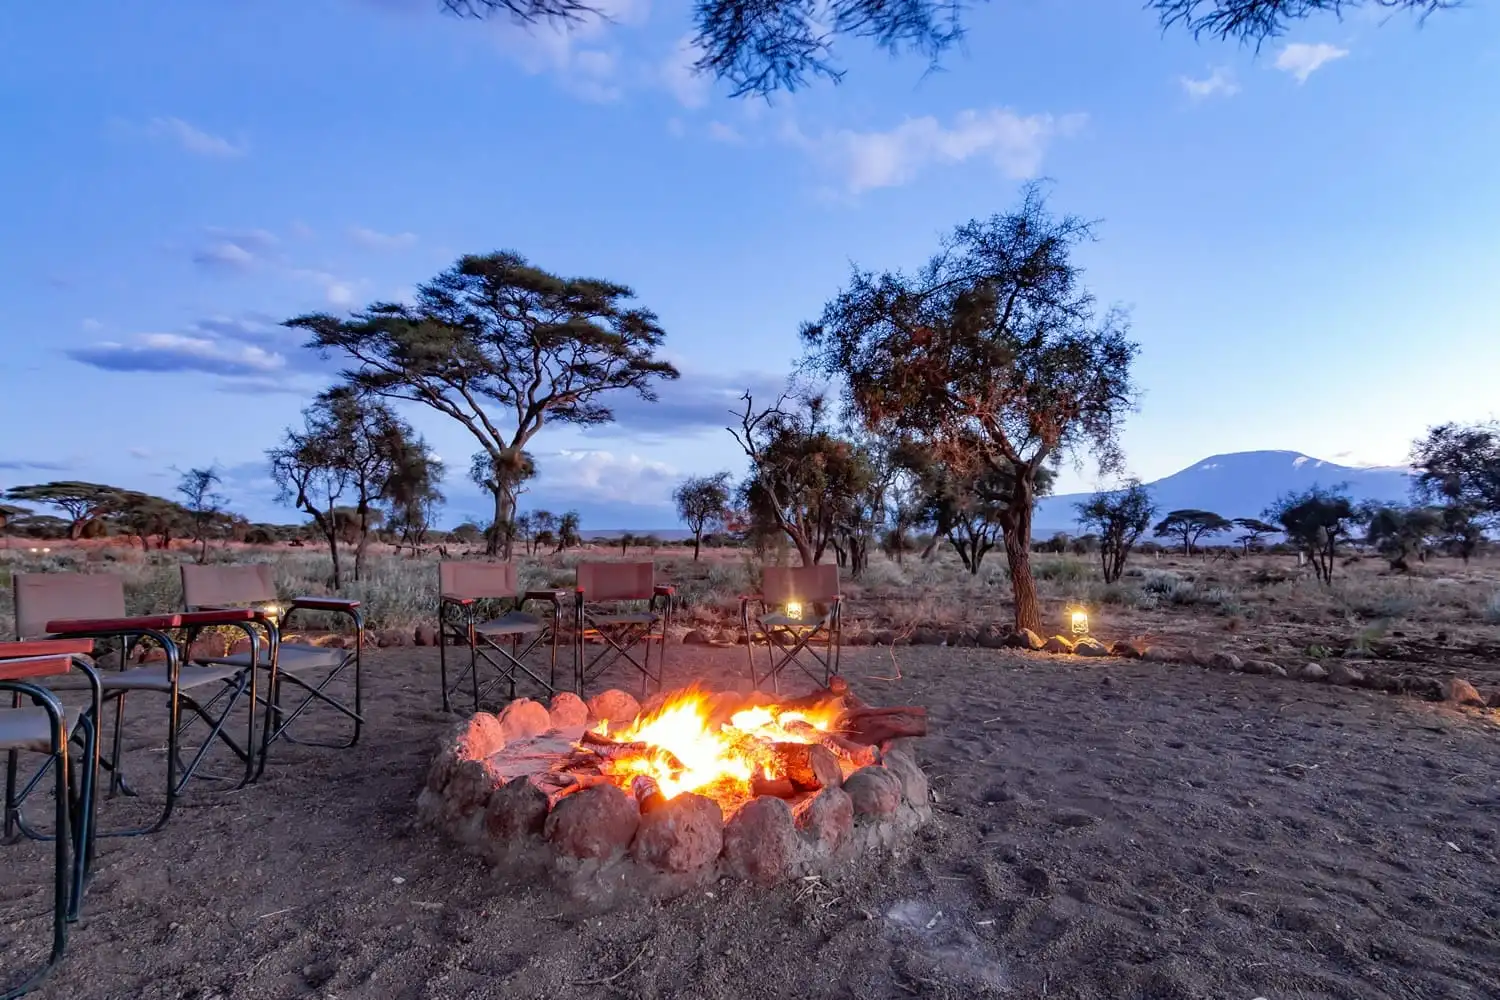 budget safari in Kenya for families, kibo safari lodge.